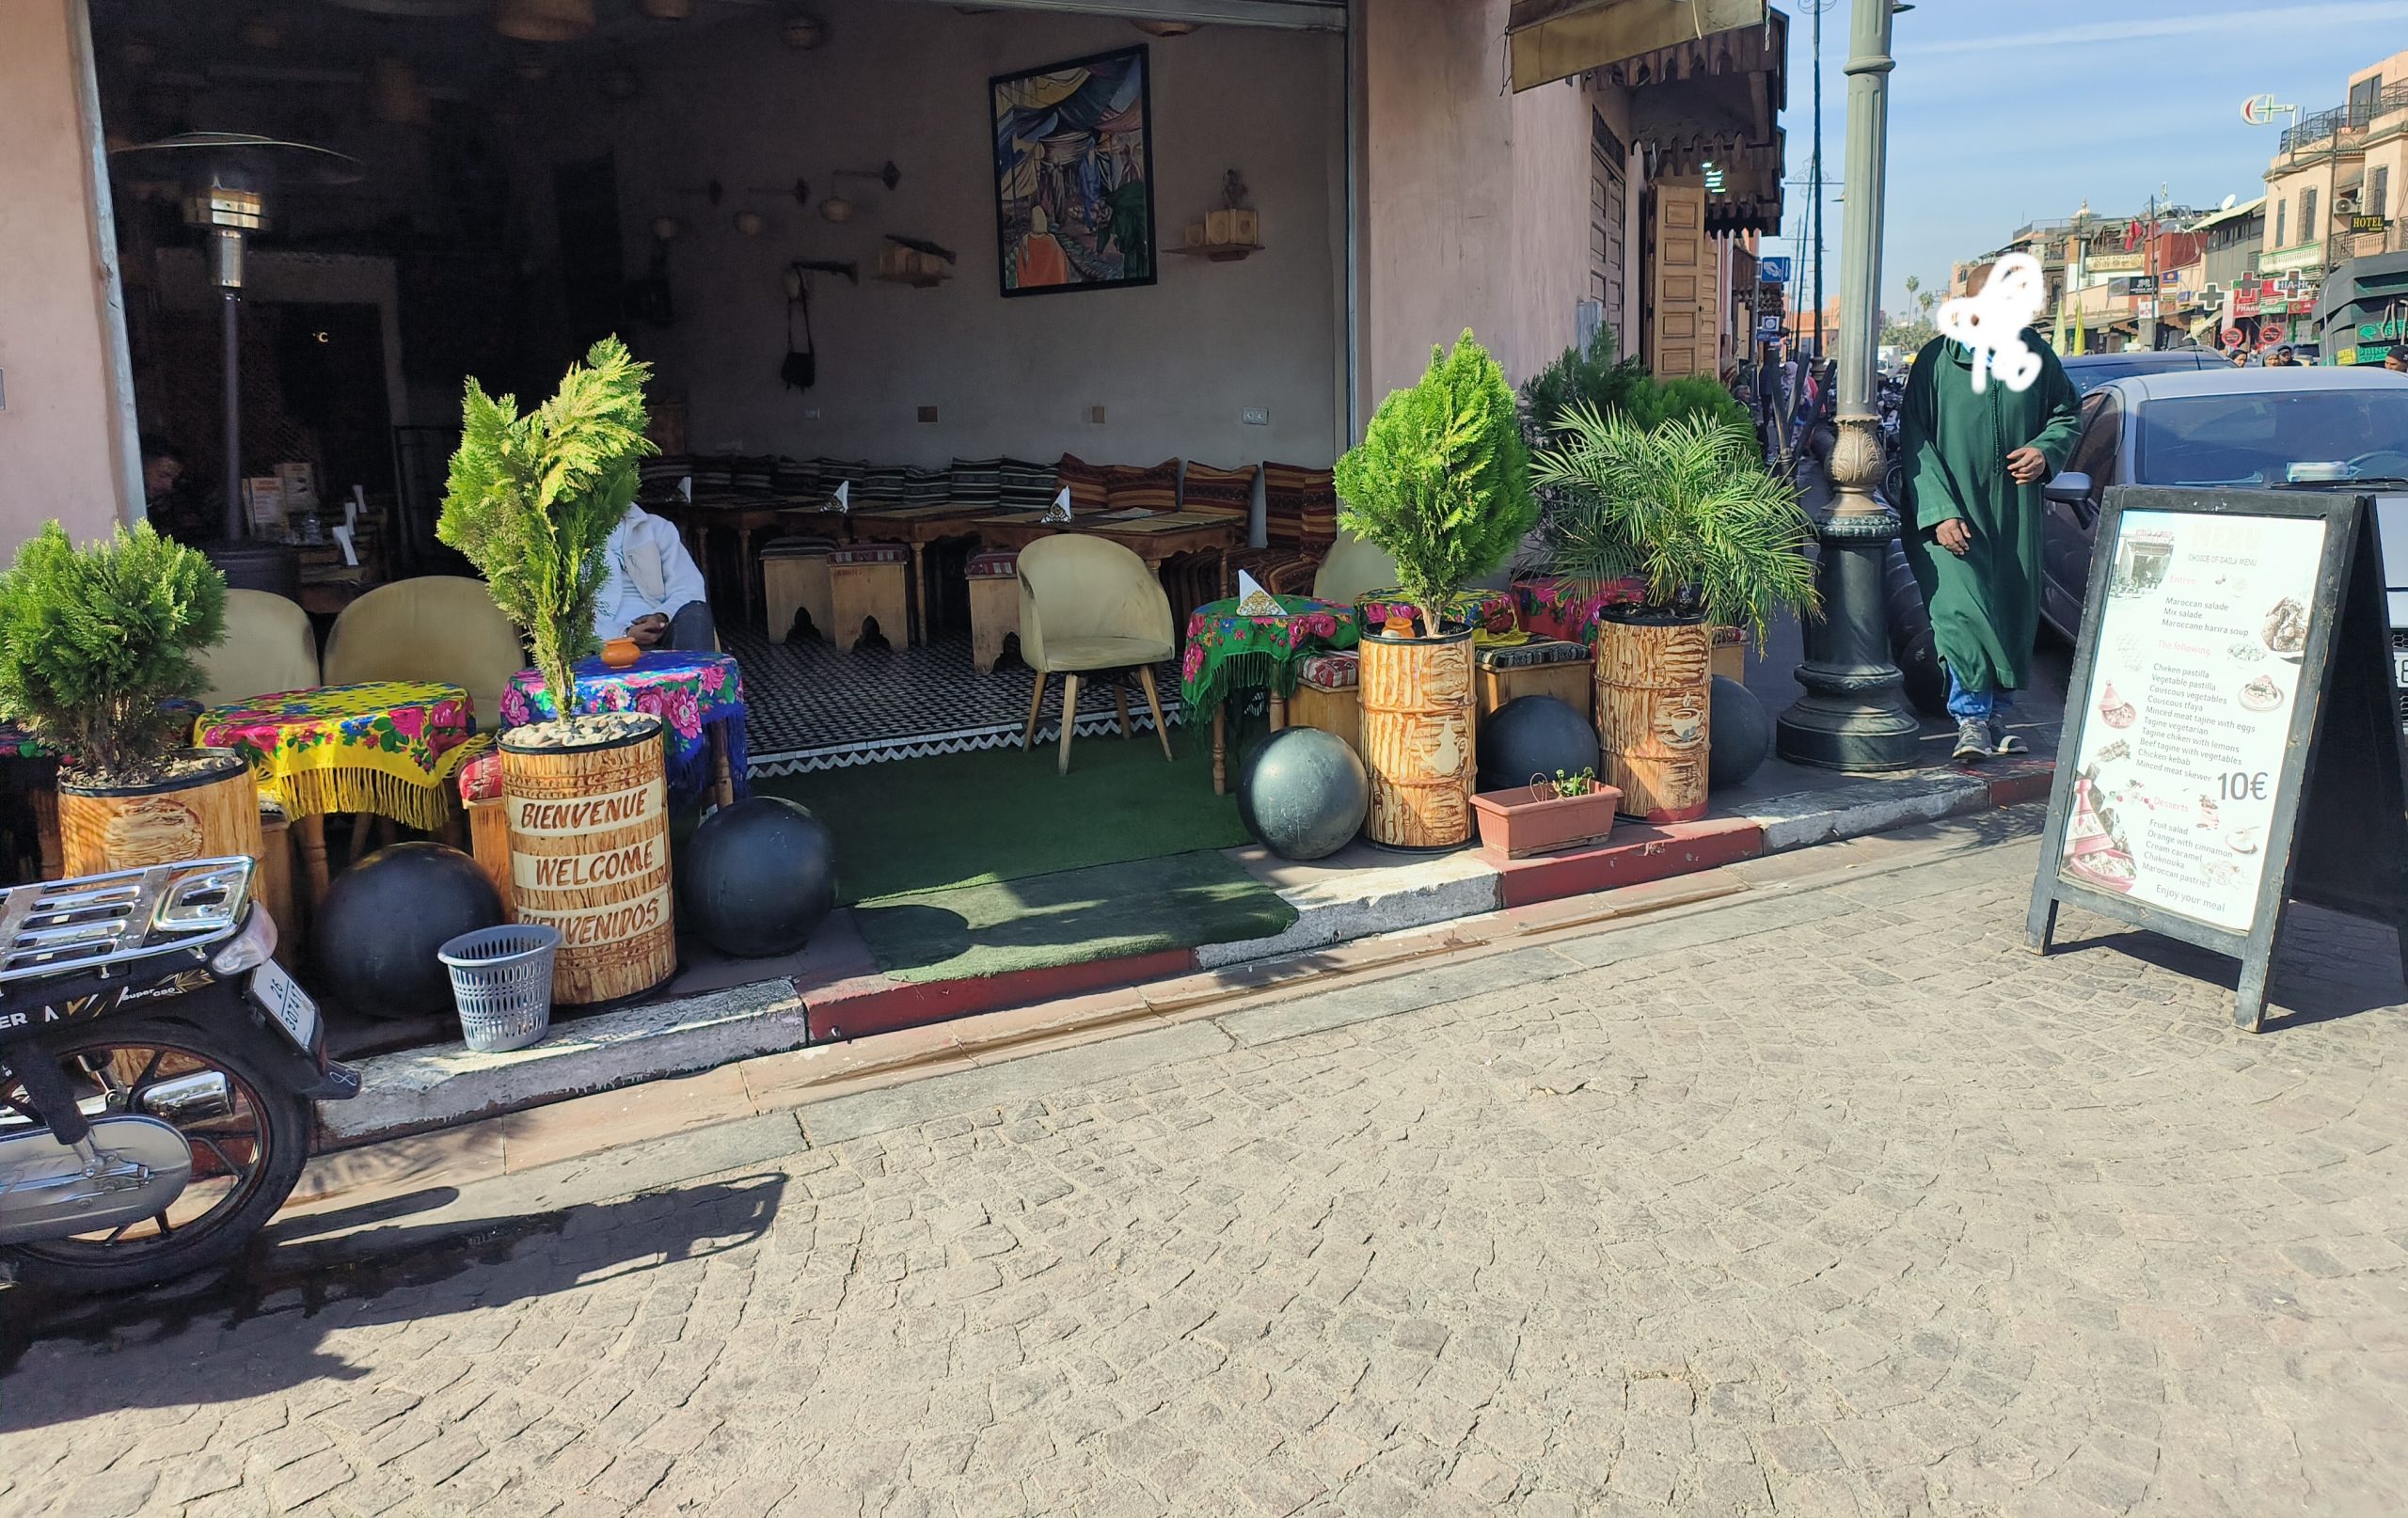 مقهى في ساحة الملاح: احتلال الملك العمومي يثير الجدل ويكشف عن فجوات في تنفيذ القوانين